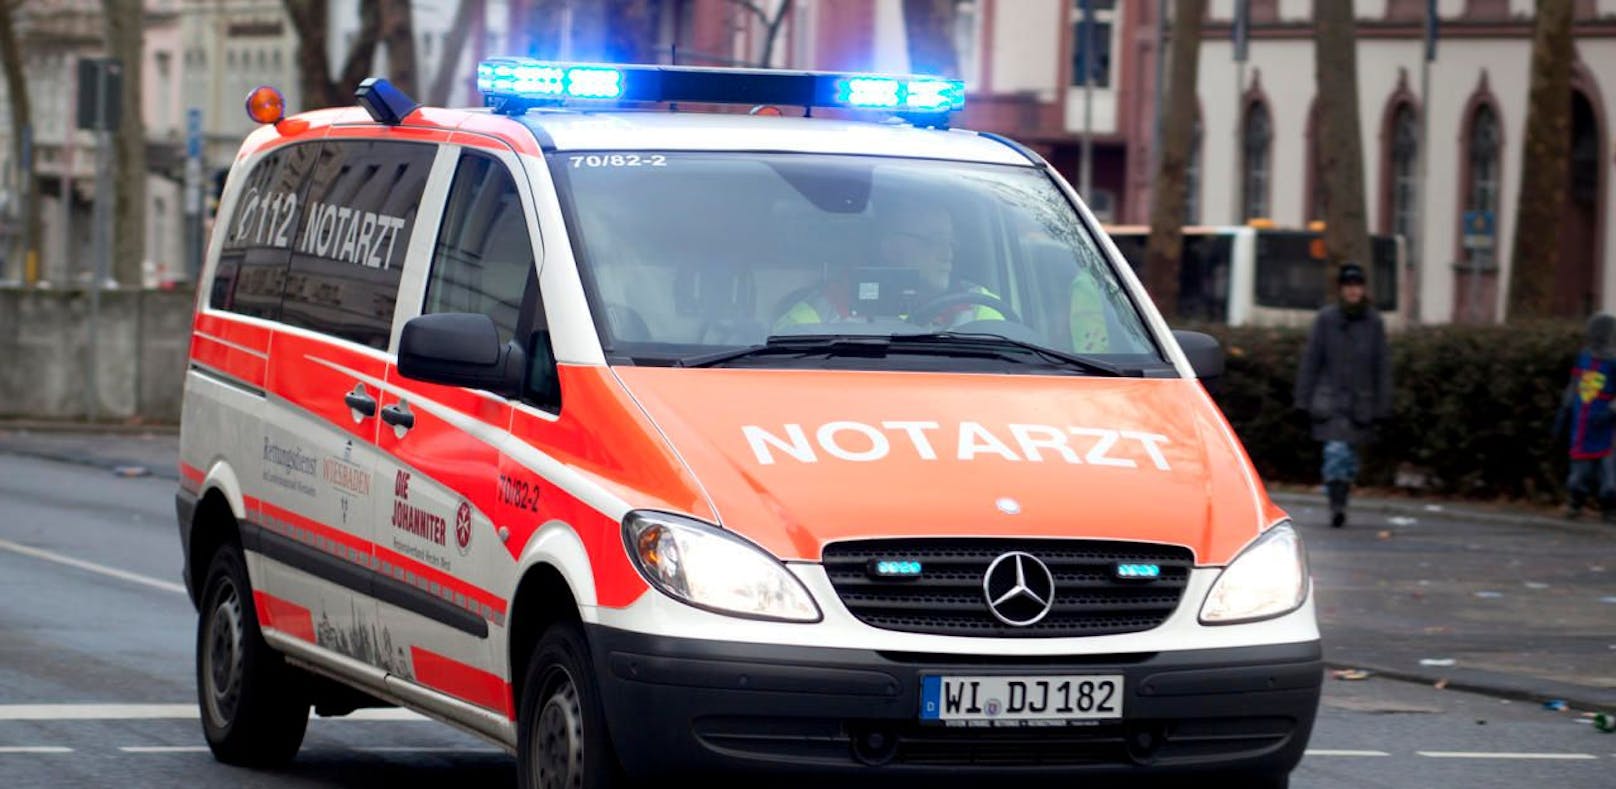 Notarzteinsatzfahrzeug (NEF) der deutschen Rettungskräfte. Symbolfoto